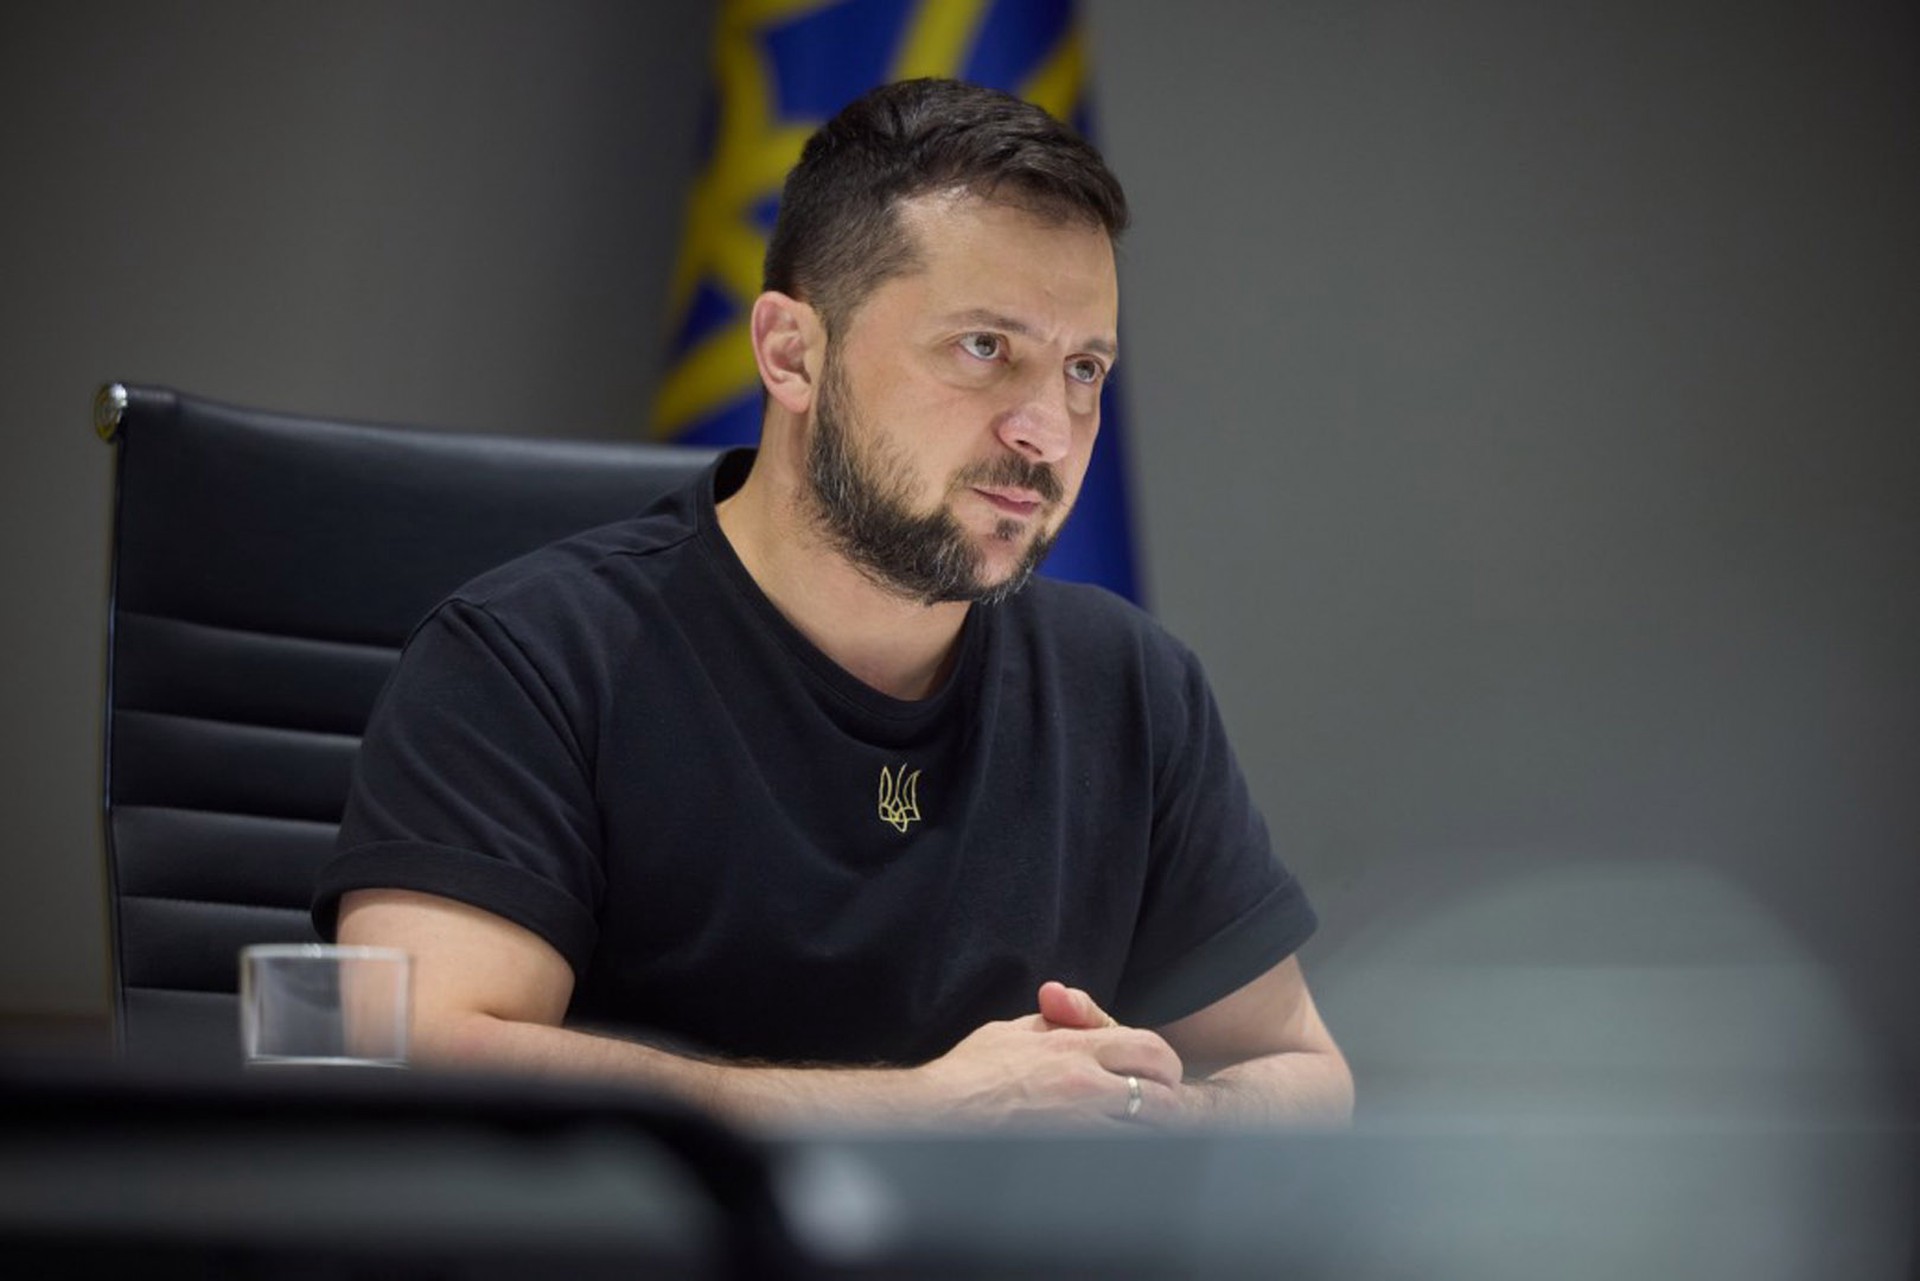 Политик Филиппо призвал остановить Зеленского после обвинений в адрес Польши